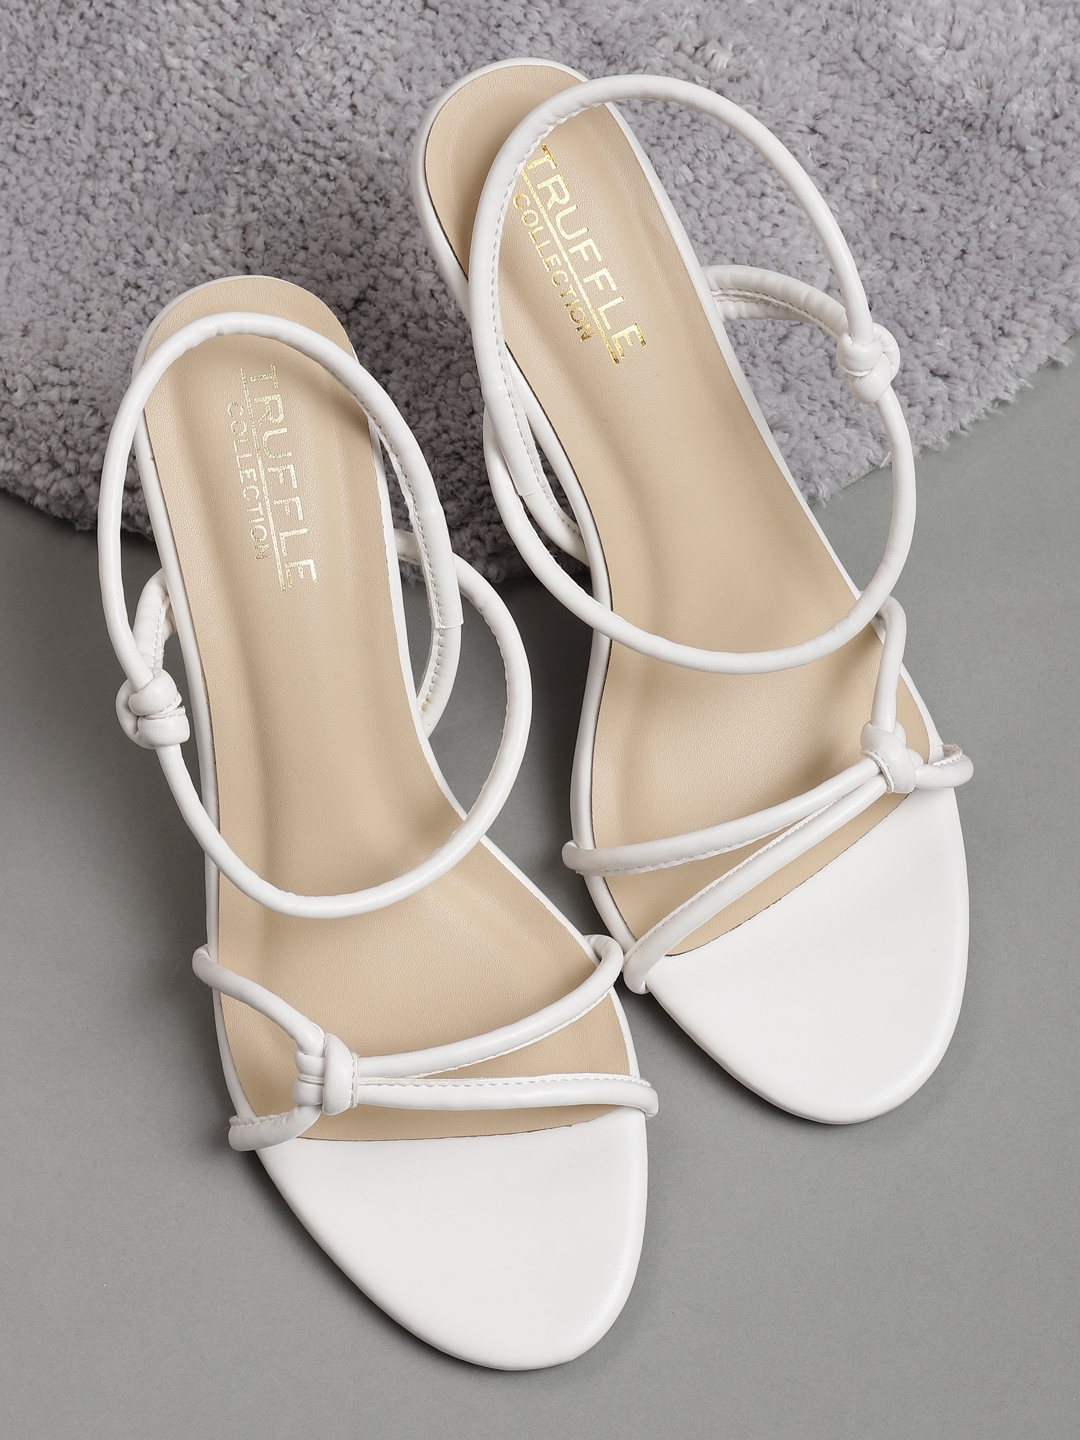 Truffle Collection | White PU Strappy Stiletto Sandals